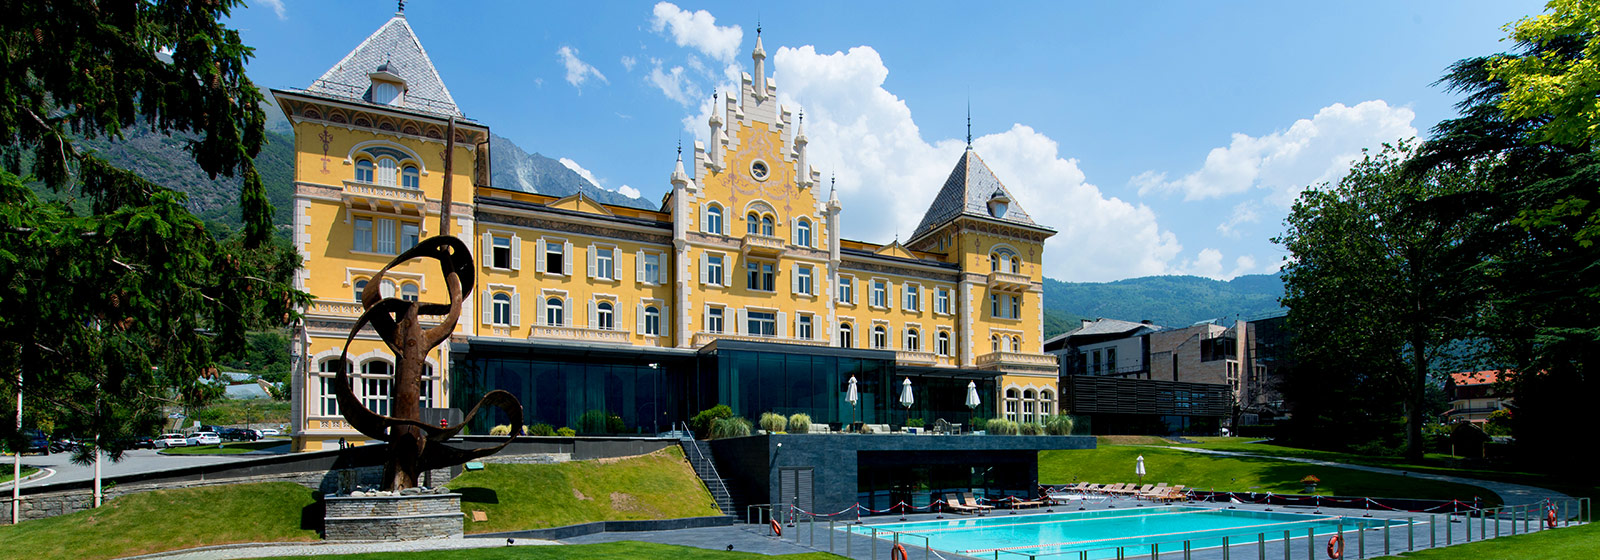 Grand hotel Billia in the Alps